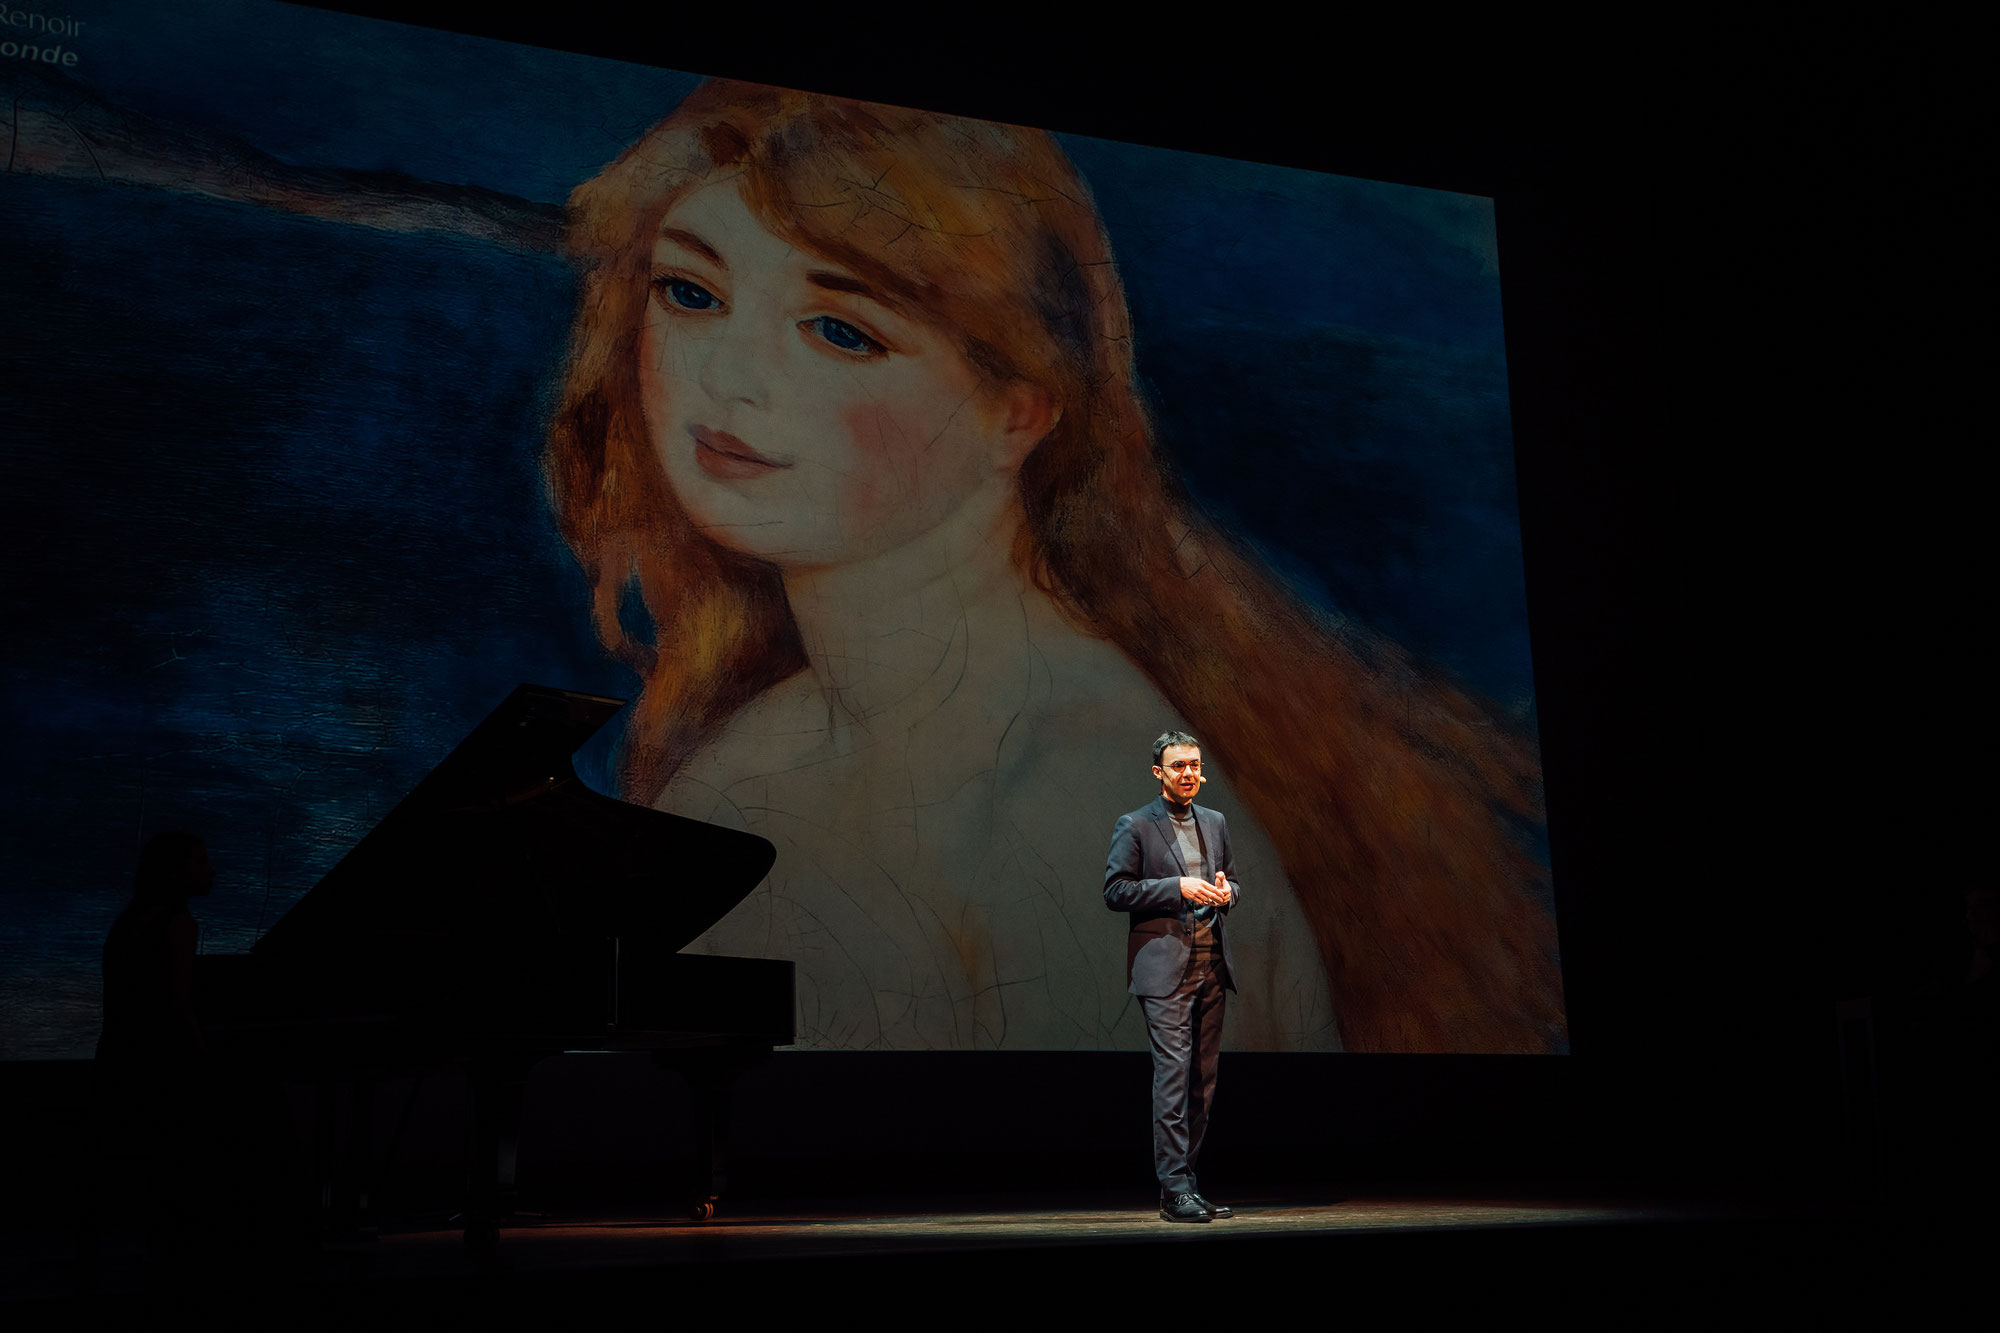 Sul grande schermo del cinema Duomo arriva lo spettacolo su Renoir